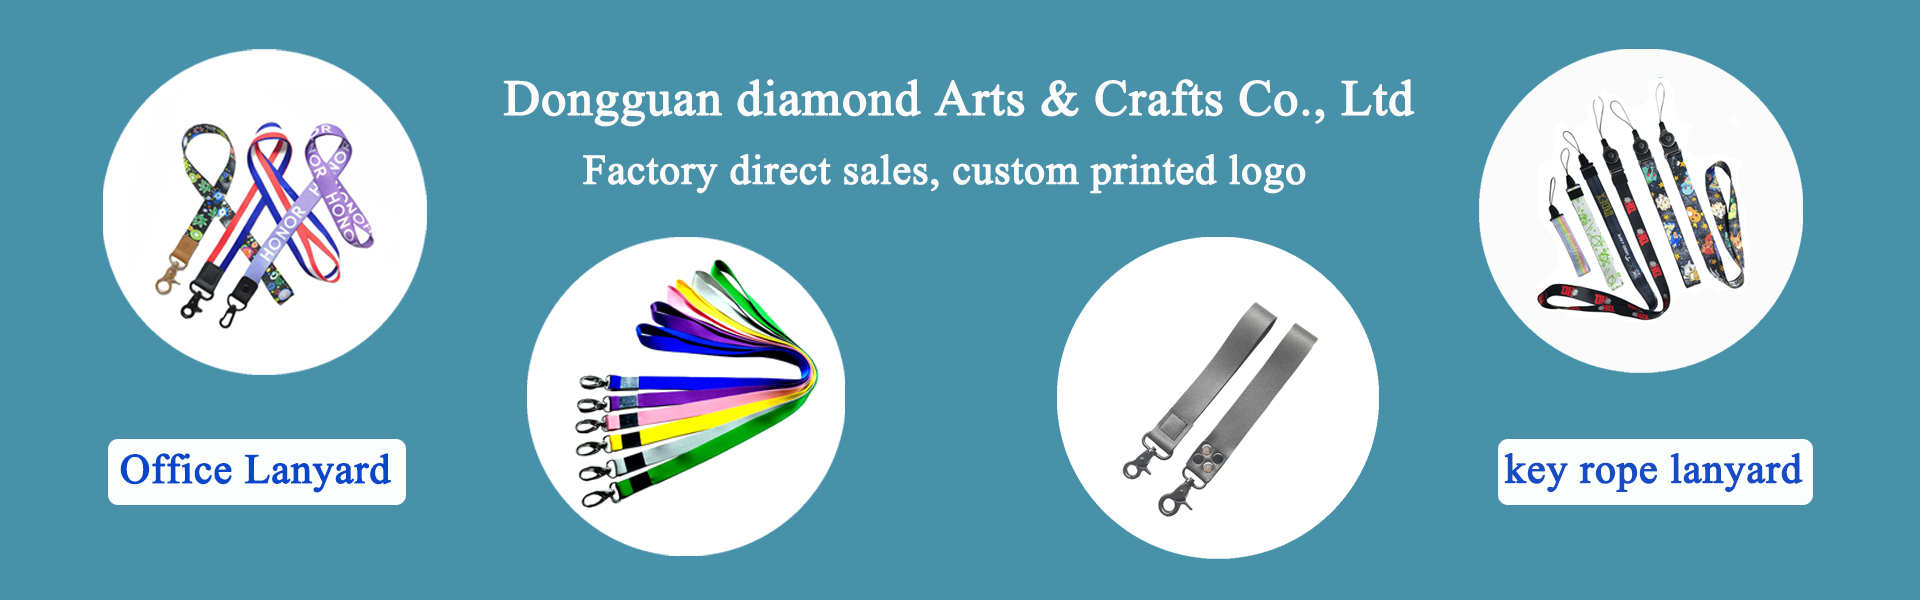 ланярд,принадлежности за облекло,домашни любимци,Dongguan diamond Arts & Crafts Co., Ltd